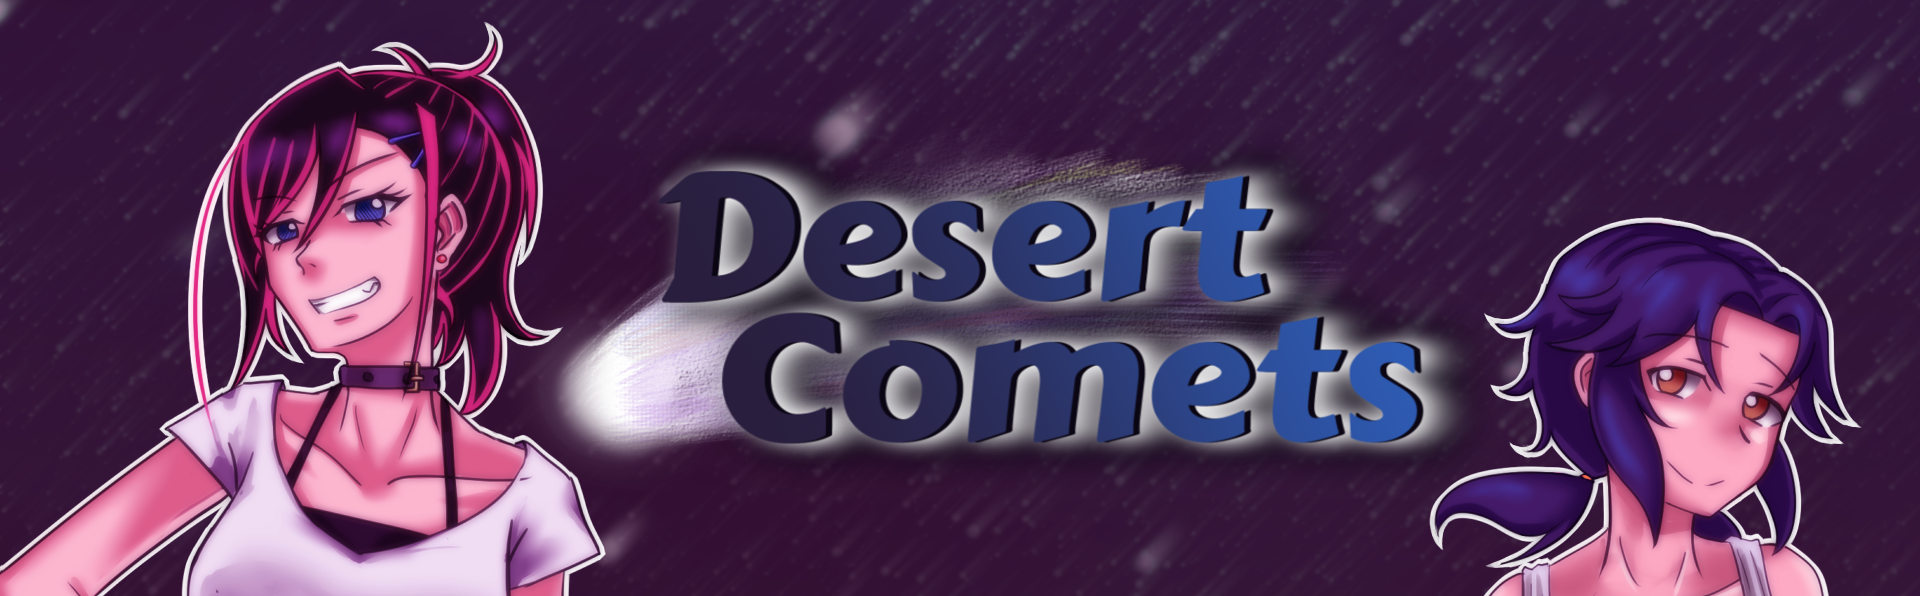 Desert Comets